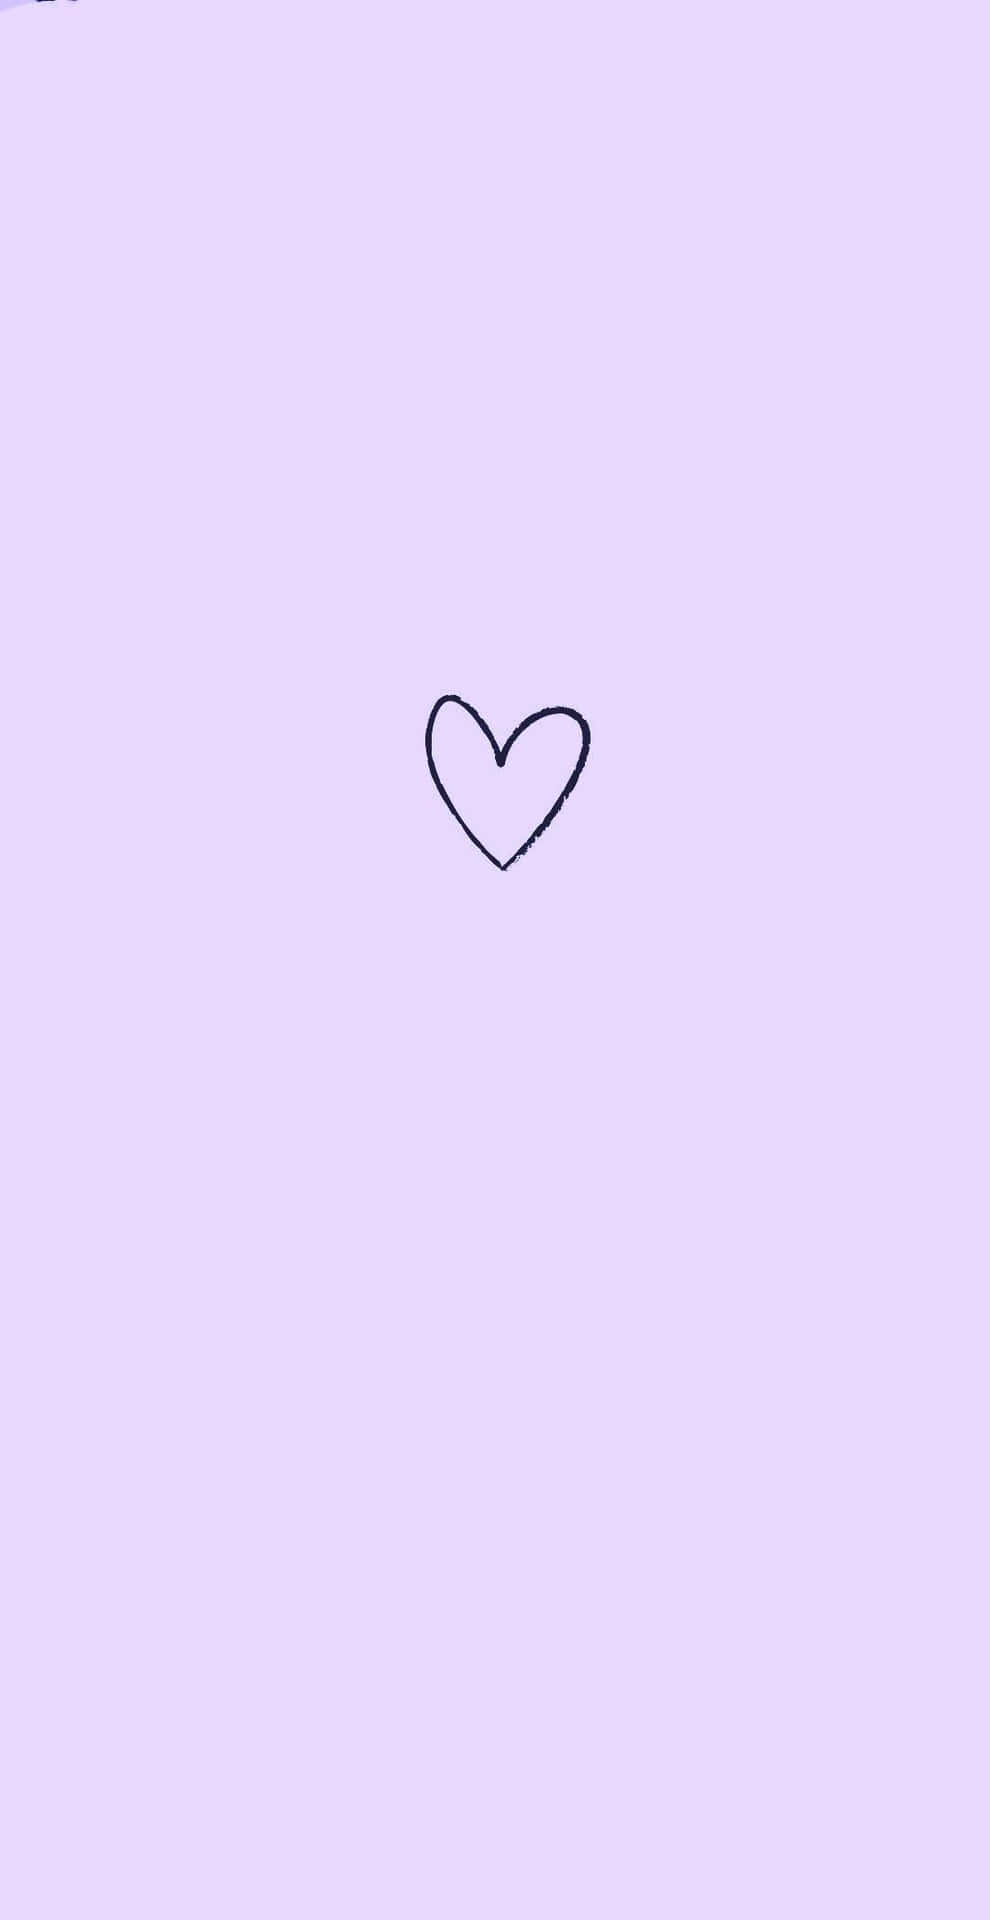 Lavendellilamed Minimalistiskt Svart Hjärta. Wallpaper